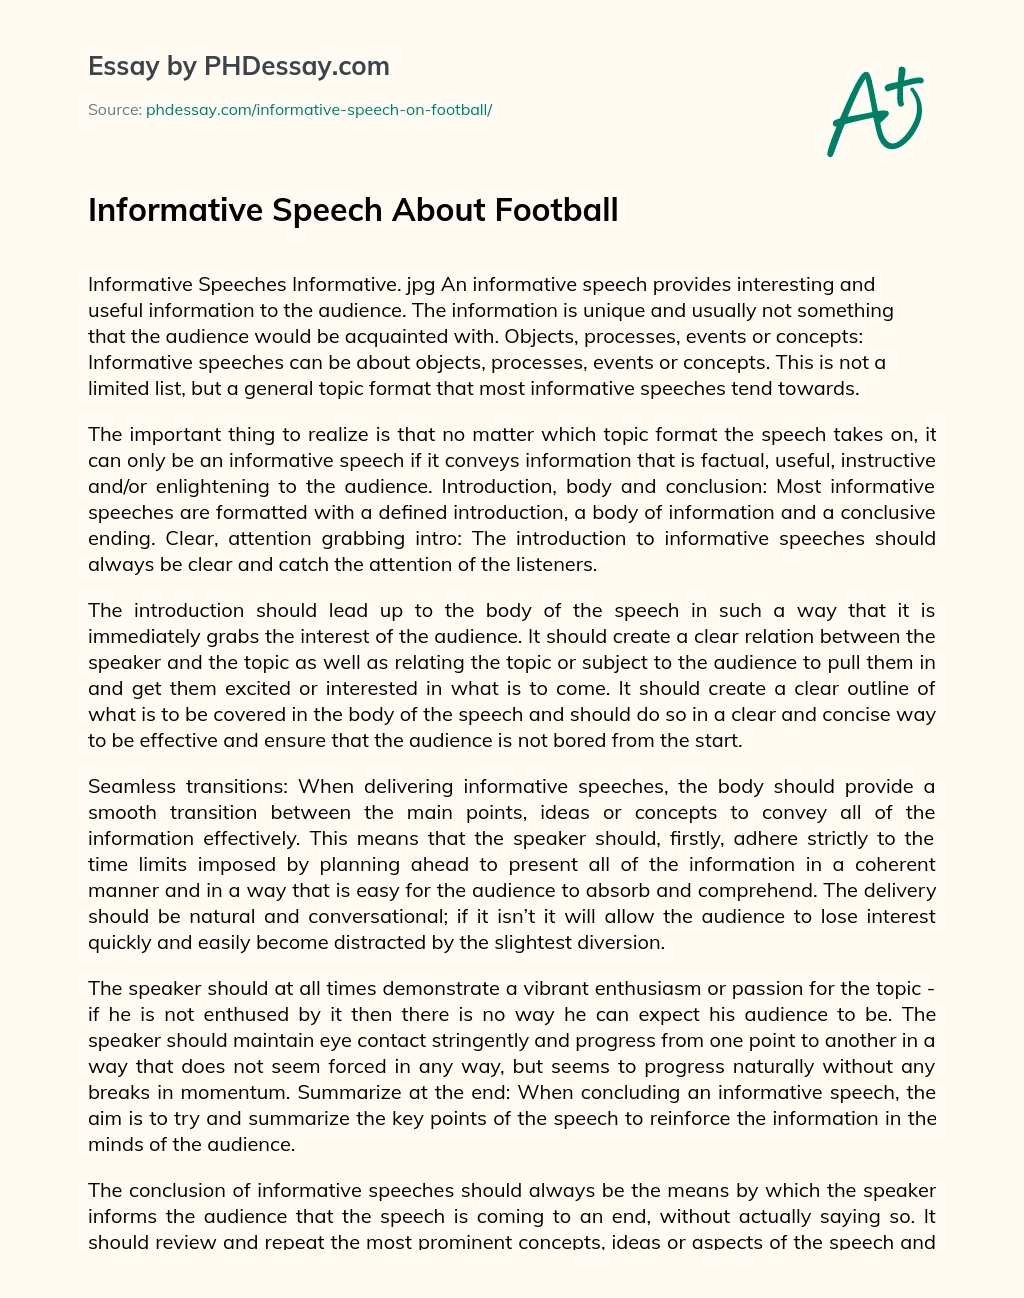 Informative Speech About Football - PHDessay.com